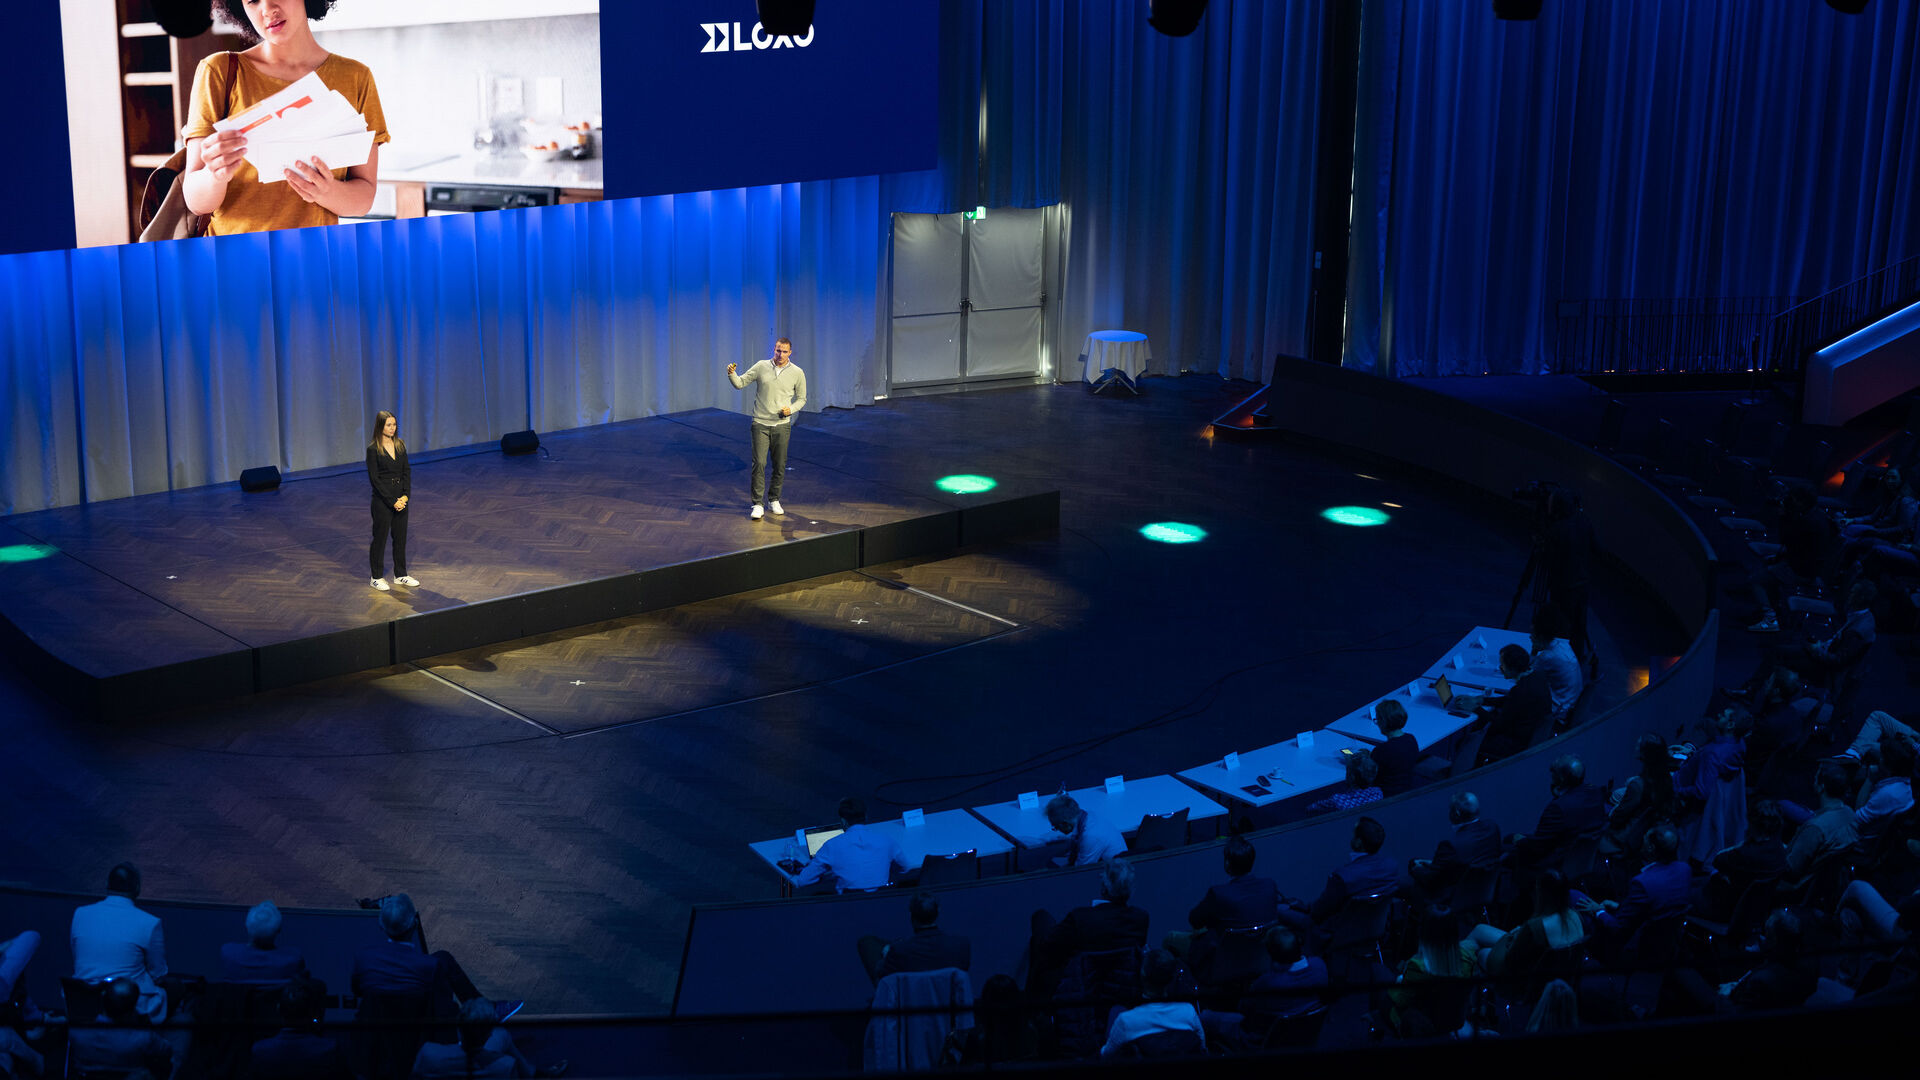 LOXO: Alpha je samovozeći kombi izrađen u cijelosti u Švicarskoj i predstavljen 6. prosinca 2022. u Kursaalu u Bernu tijekom konferencije za novinare od strane start-upa LOXO